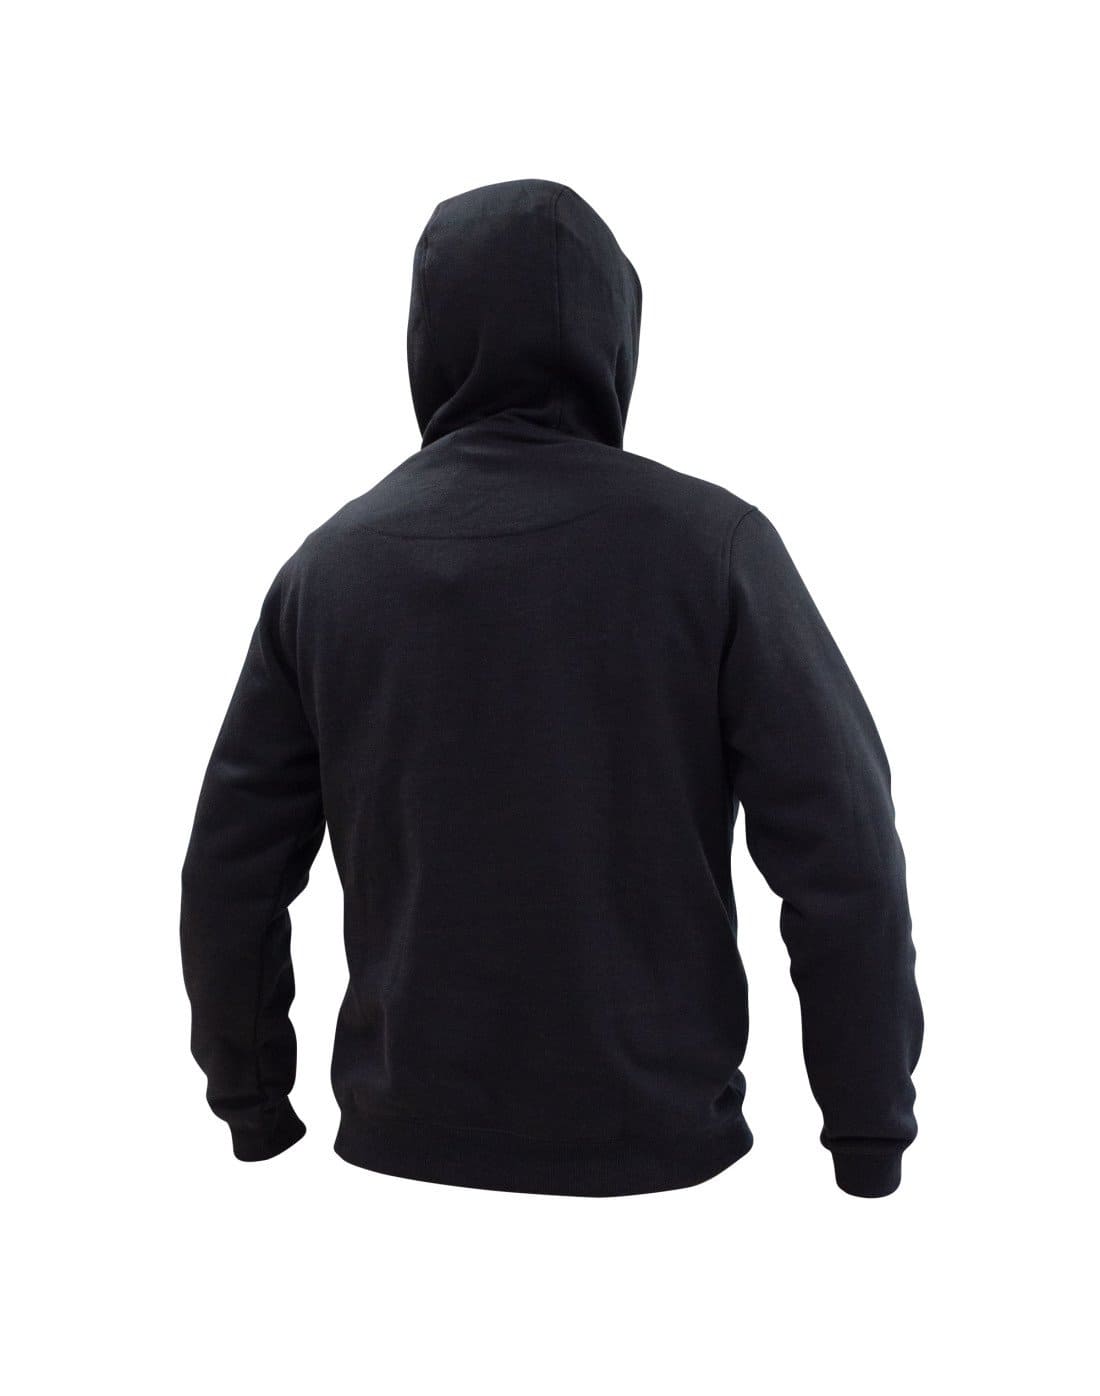 Polerón canguro hoodie de TEAMGRAFF, estilo urbano con comodidad superior, ideal para el día a día y aventuras al aire libre